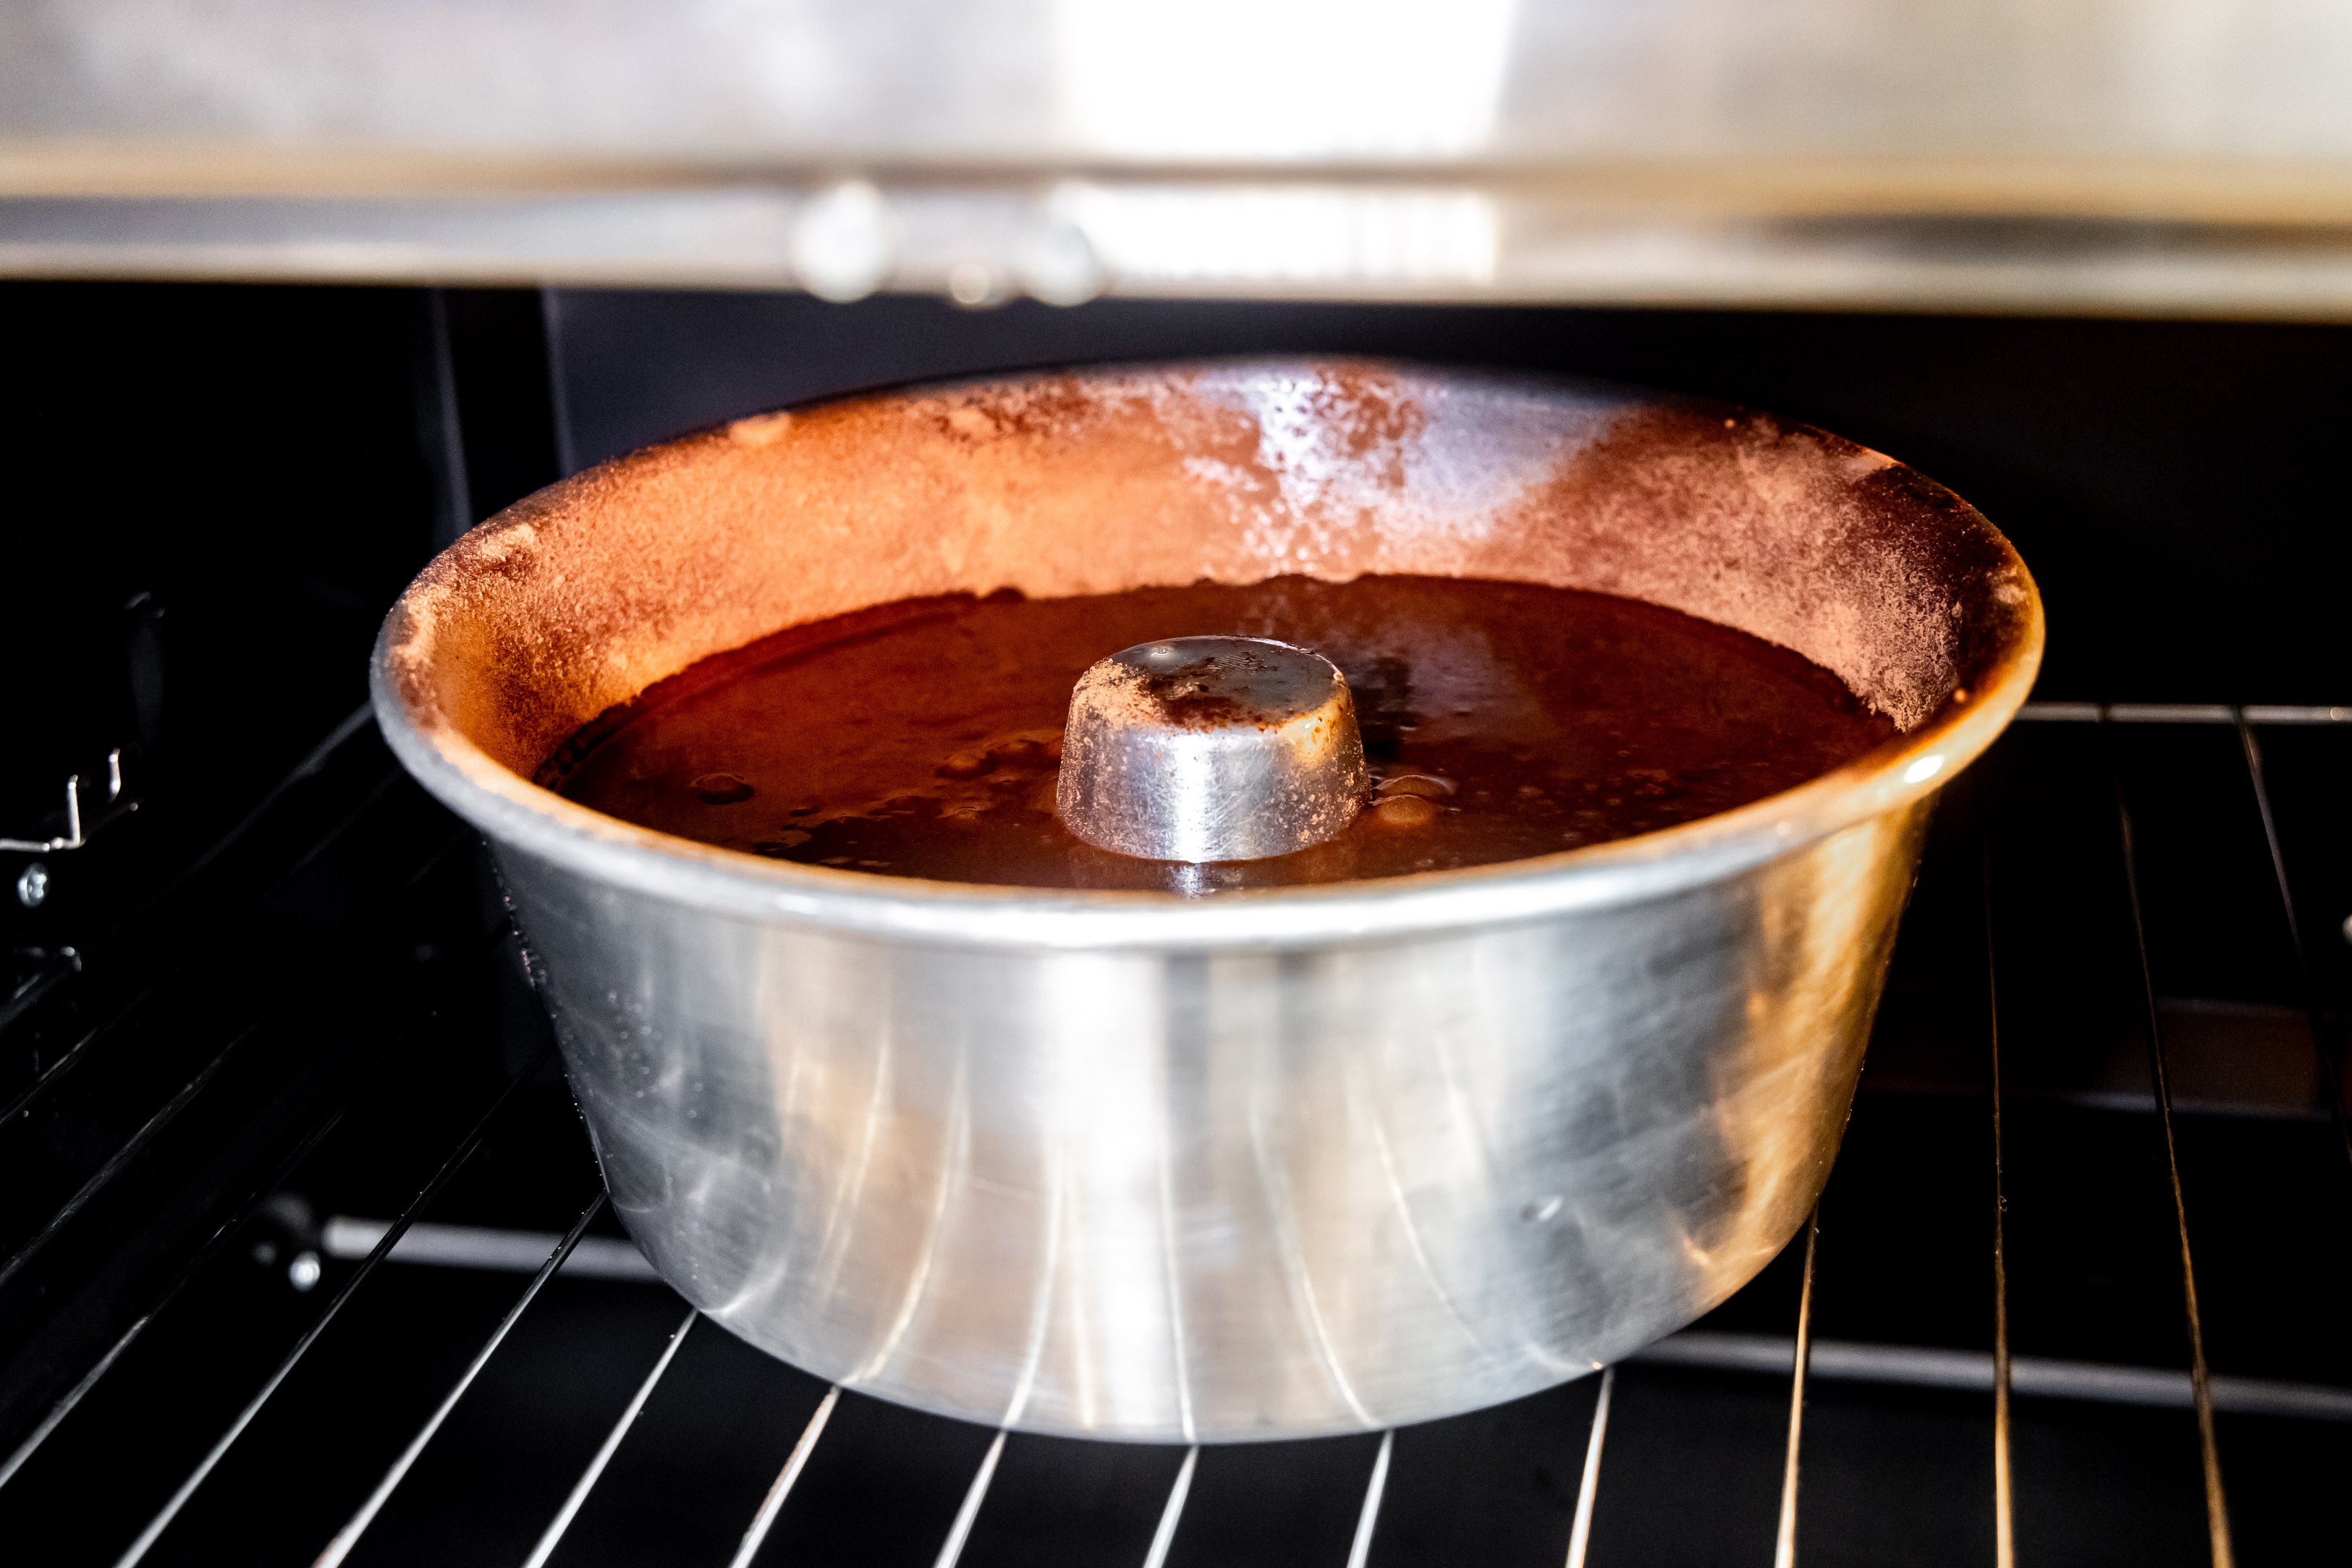 Foto aproximada de uma forma de alumínio de furo central com a massa do bolo dentro. Ela está dentro de um forno.